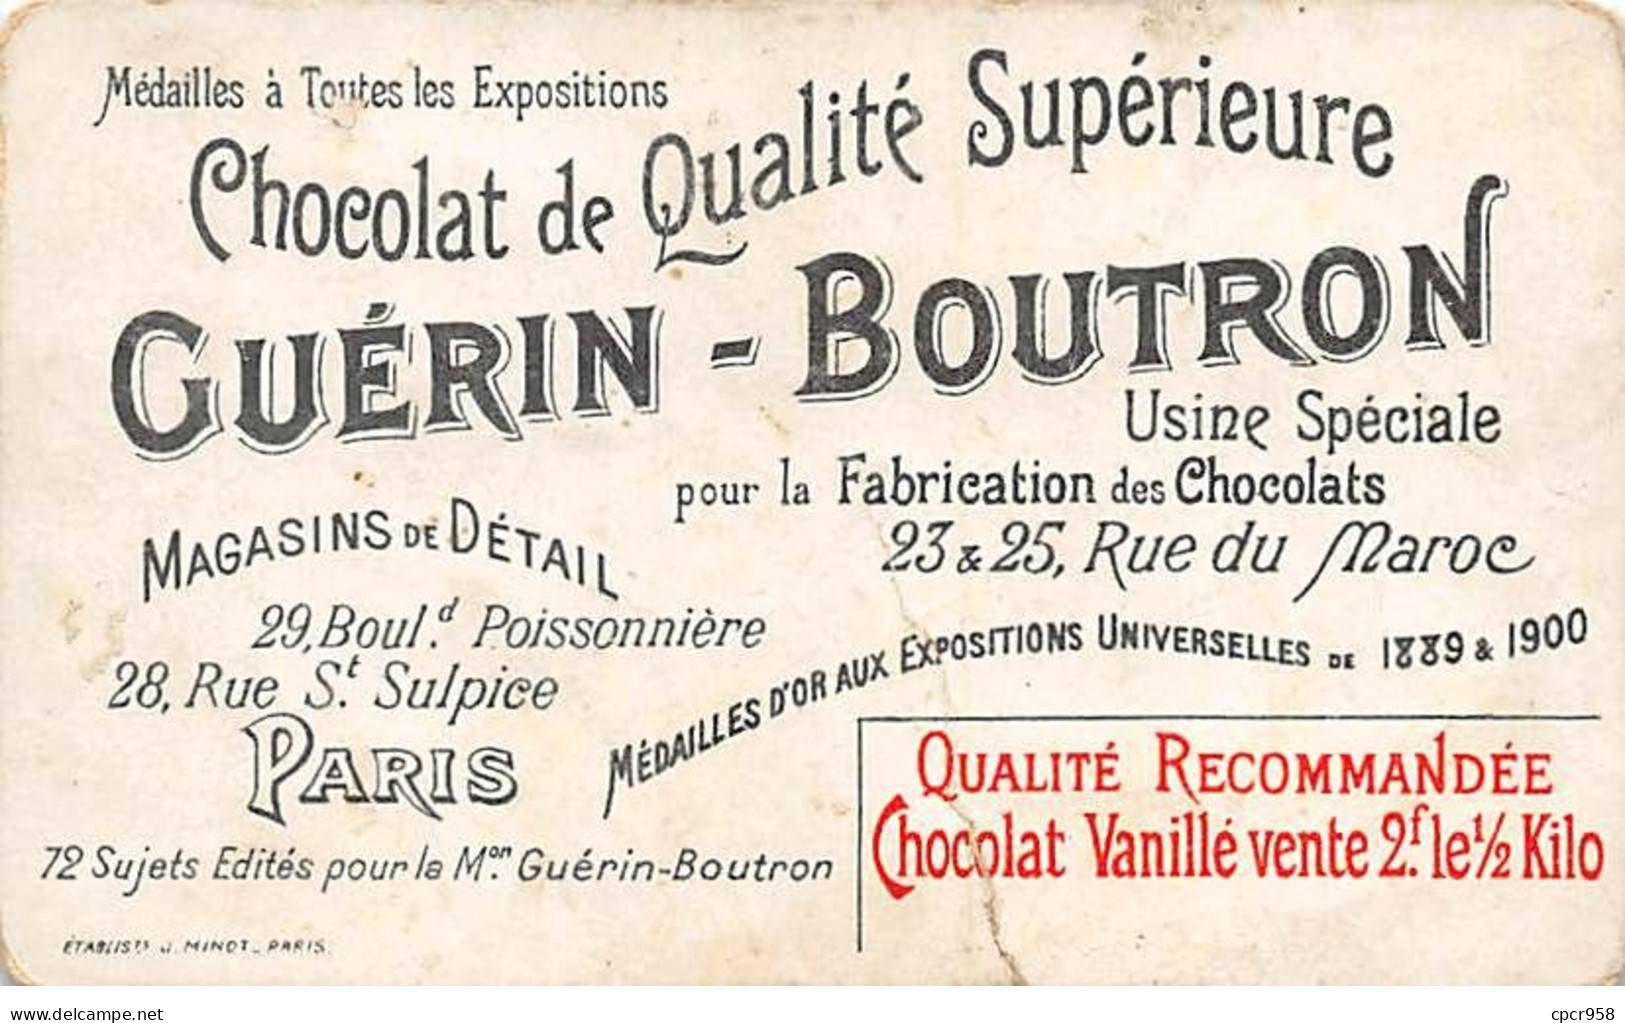 Chromos -COR12252 - Chocolat Guérin-Boutron - Industrie Des Sardines - Femmes - En L'état - Déchirée - 6x10cm Env. - Guerin Boutron